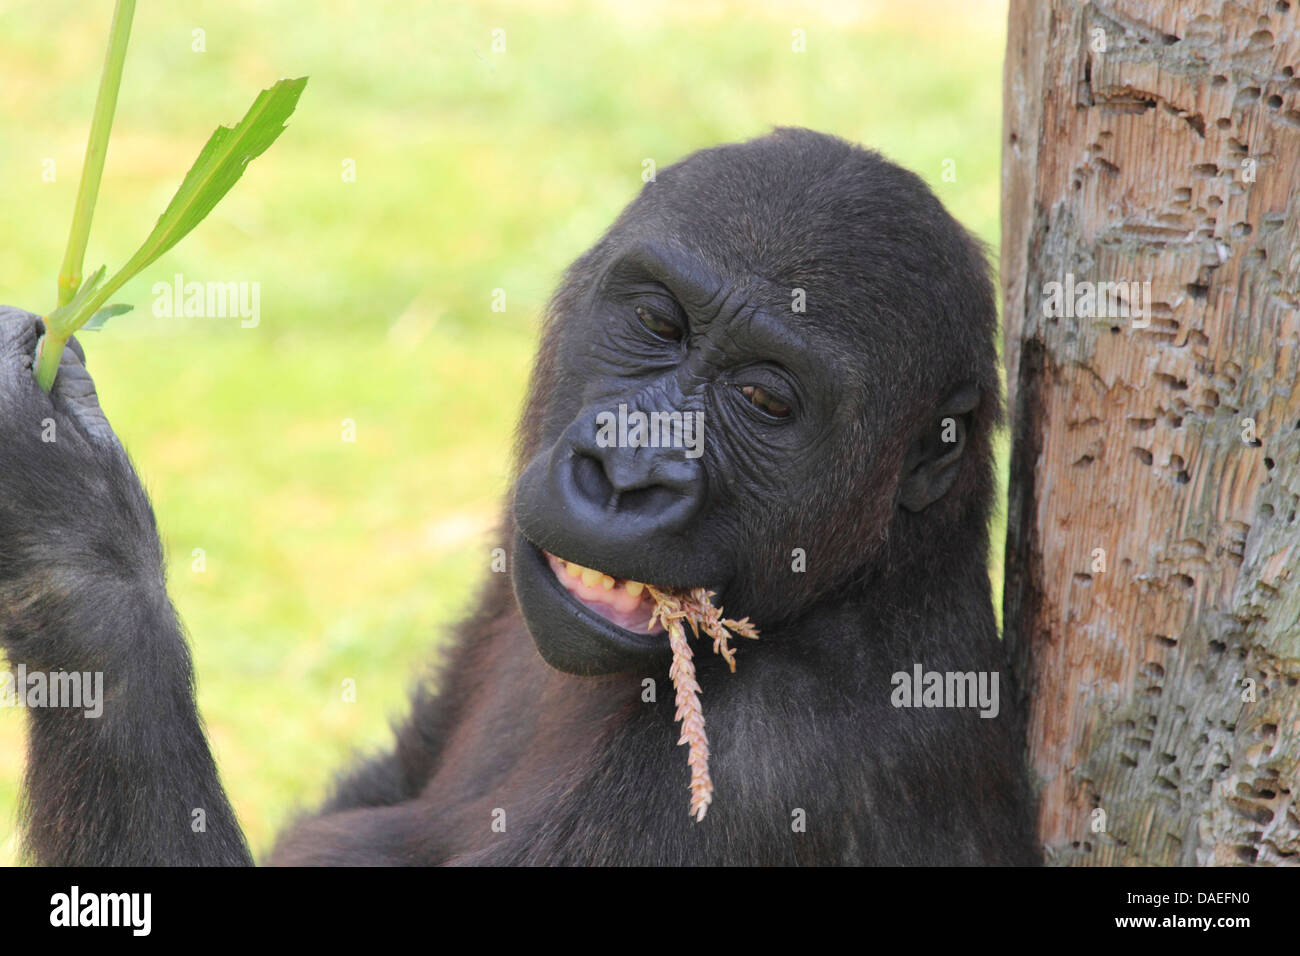 lowland gorilla (Gorilla gorilla gorilla), feeding Stock Photo